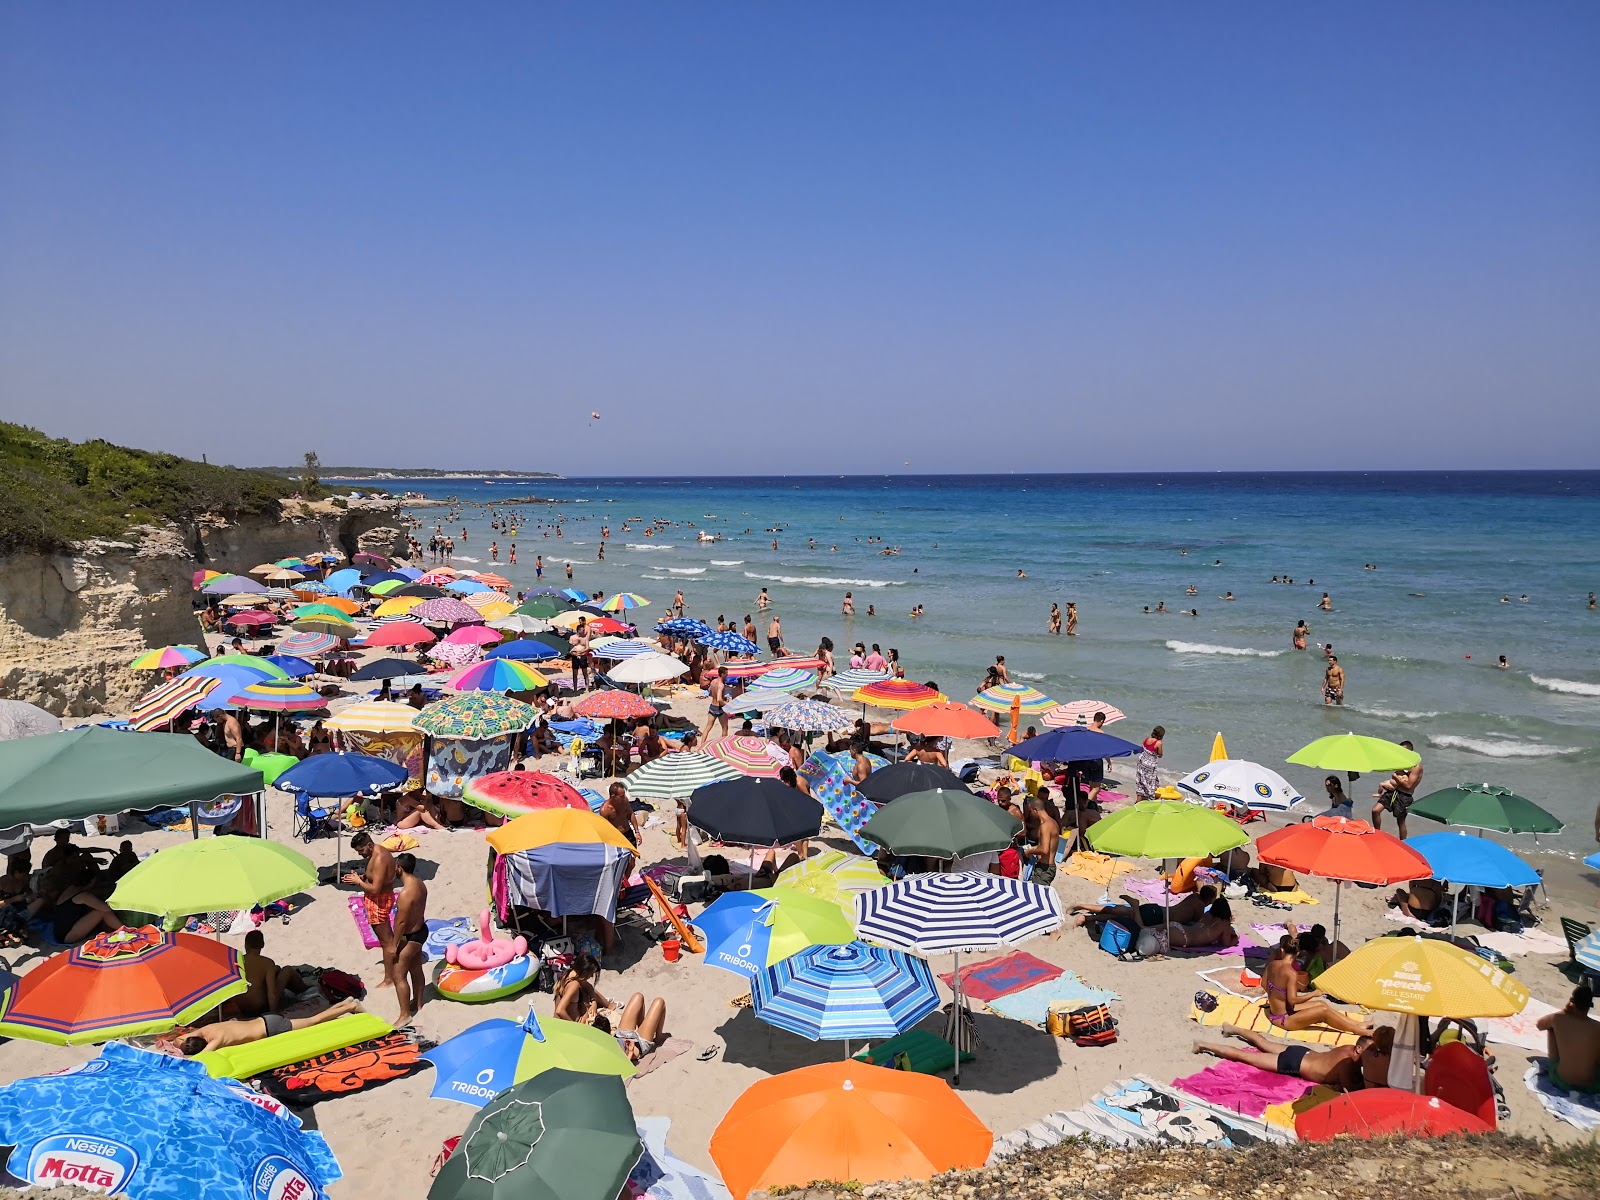 Photo de Spiaggia Baia dei Turchi situé dans une zone naturelle